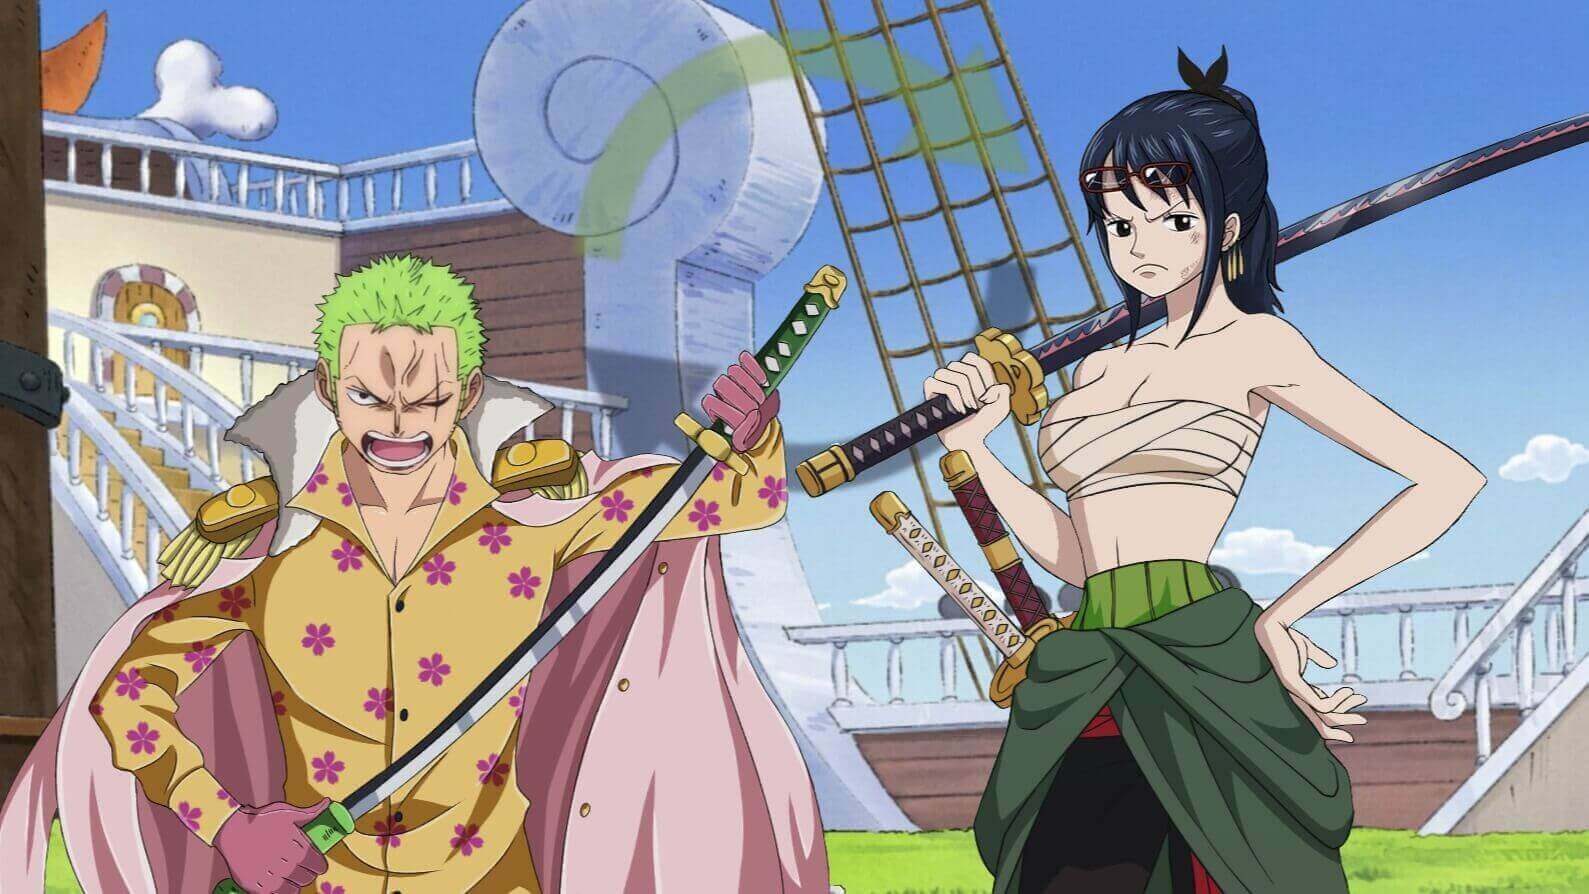 Tashigi (One Piece) - anime girl swordswoman